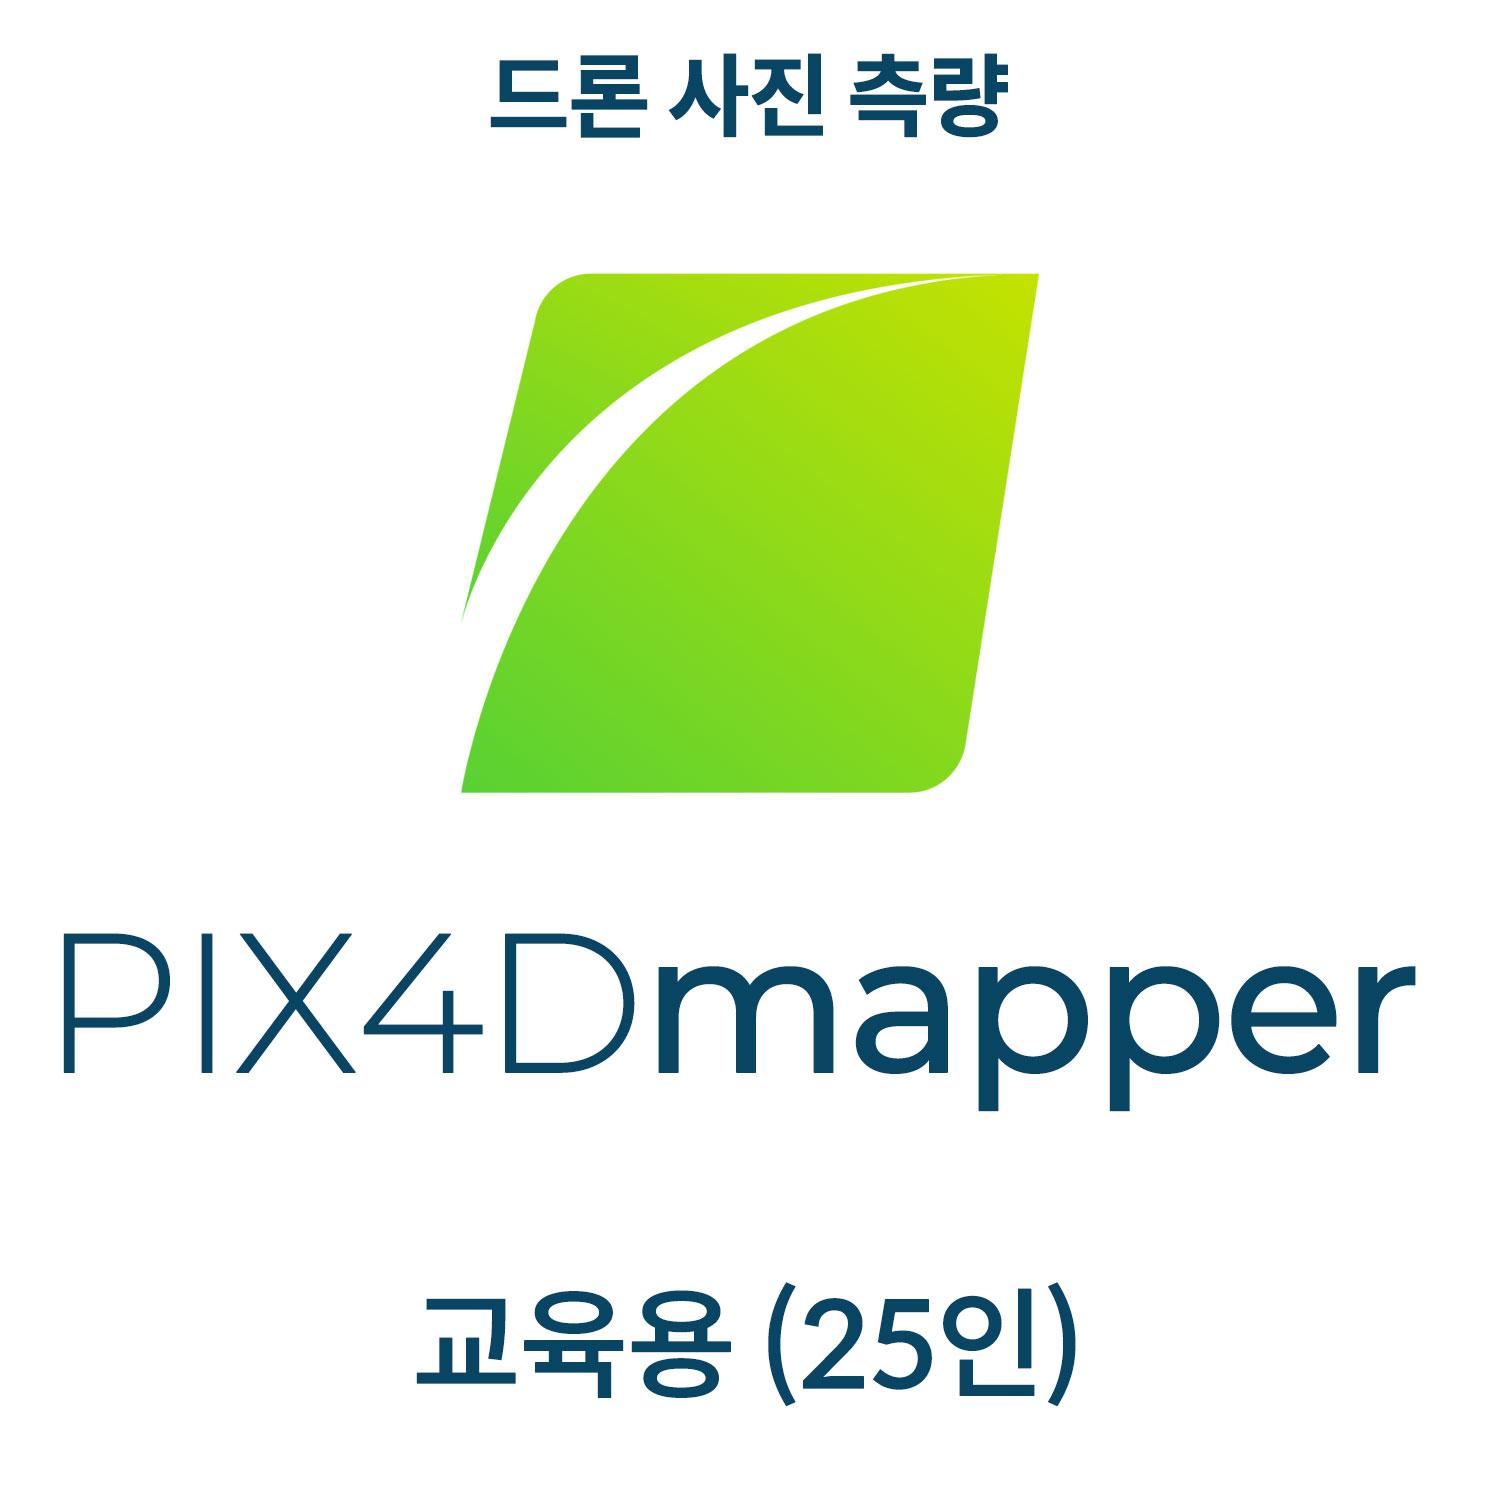 PIX4Dmapper EDU(CLASS)공공 교육기관(25인)(영구소유) 헬셀